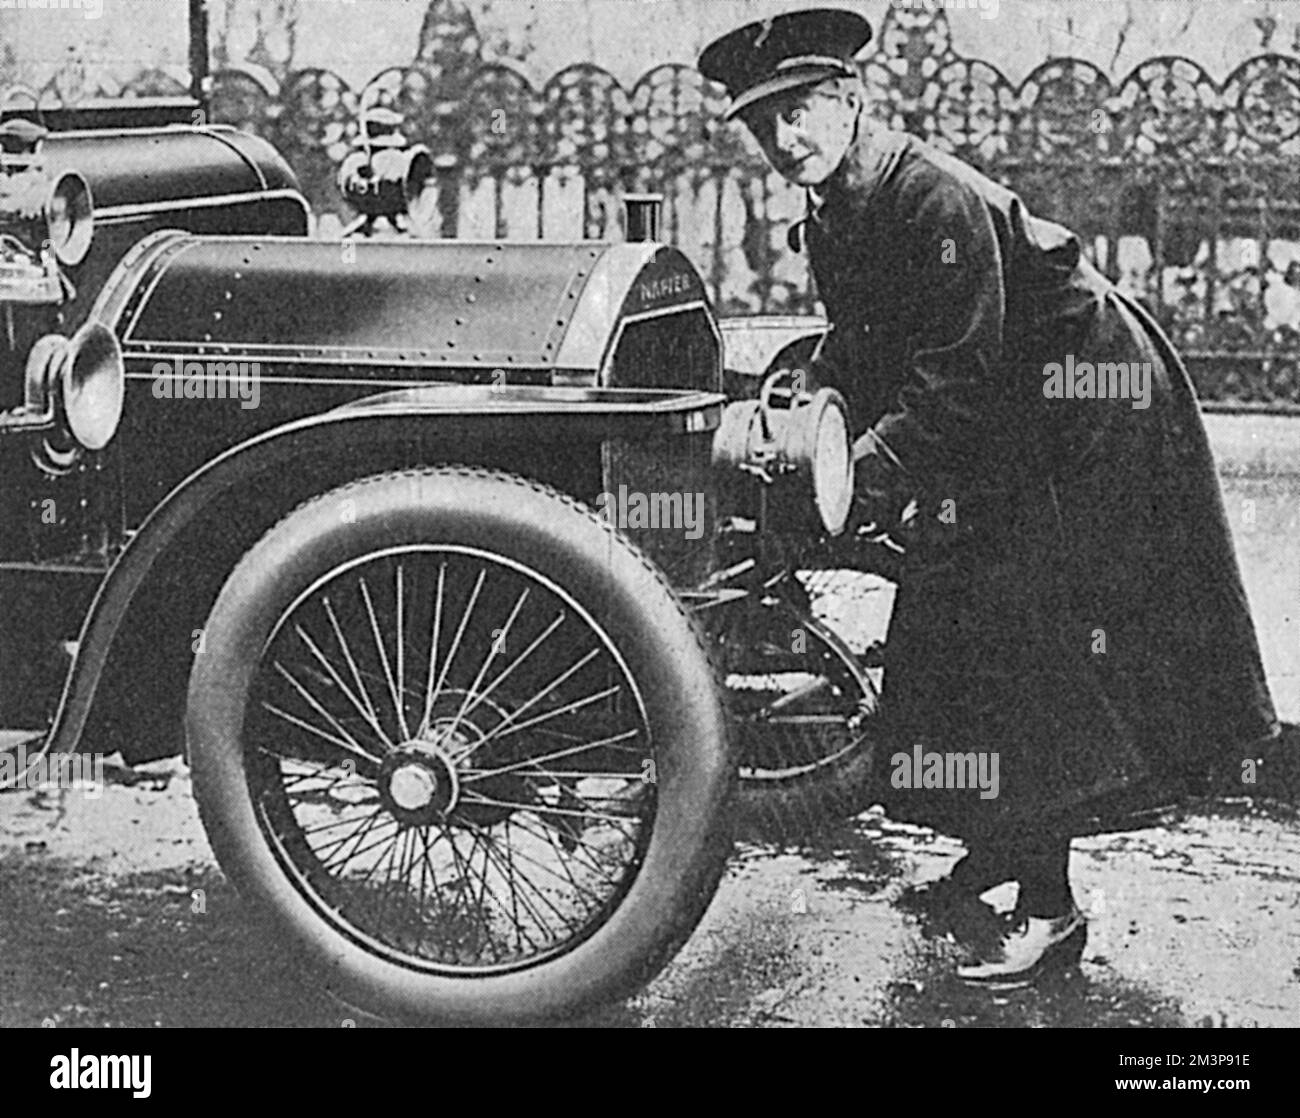 La voiture Napier du très honorable David Lloyd George étant lancée par sa femme chauffeur qui, selon le Tatler, la gère de manière très habile. Date: 1916 Banque D'Images